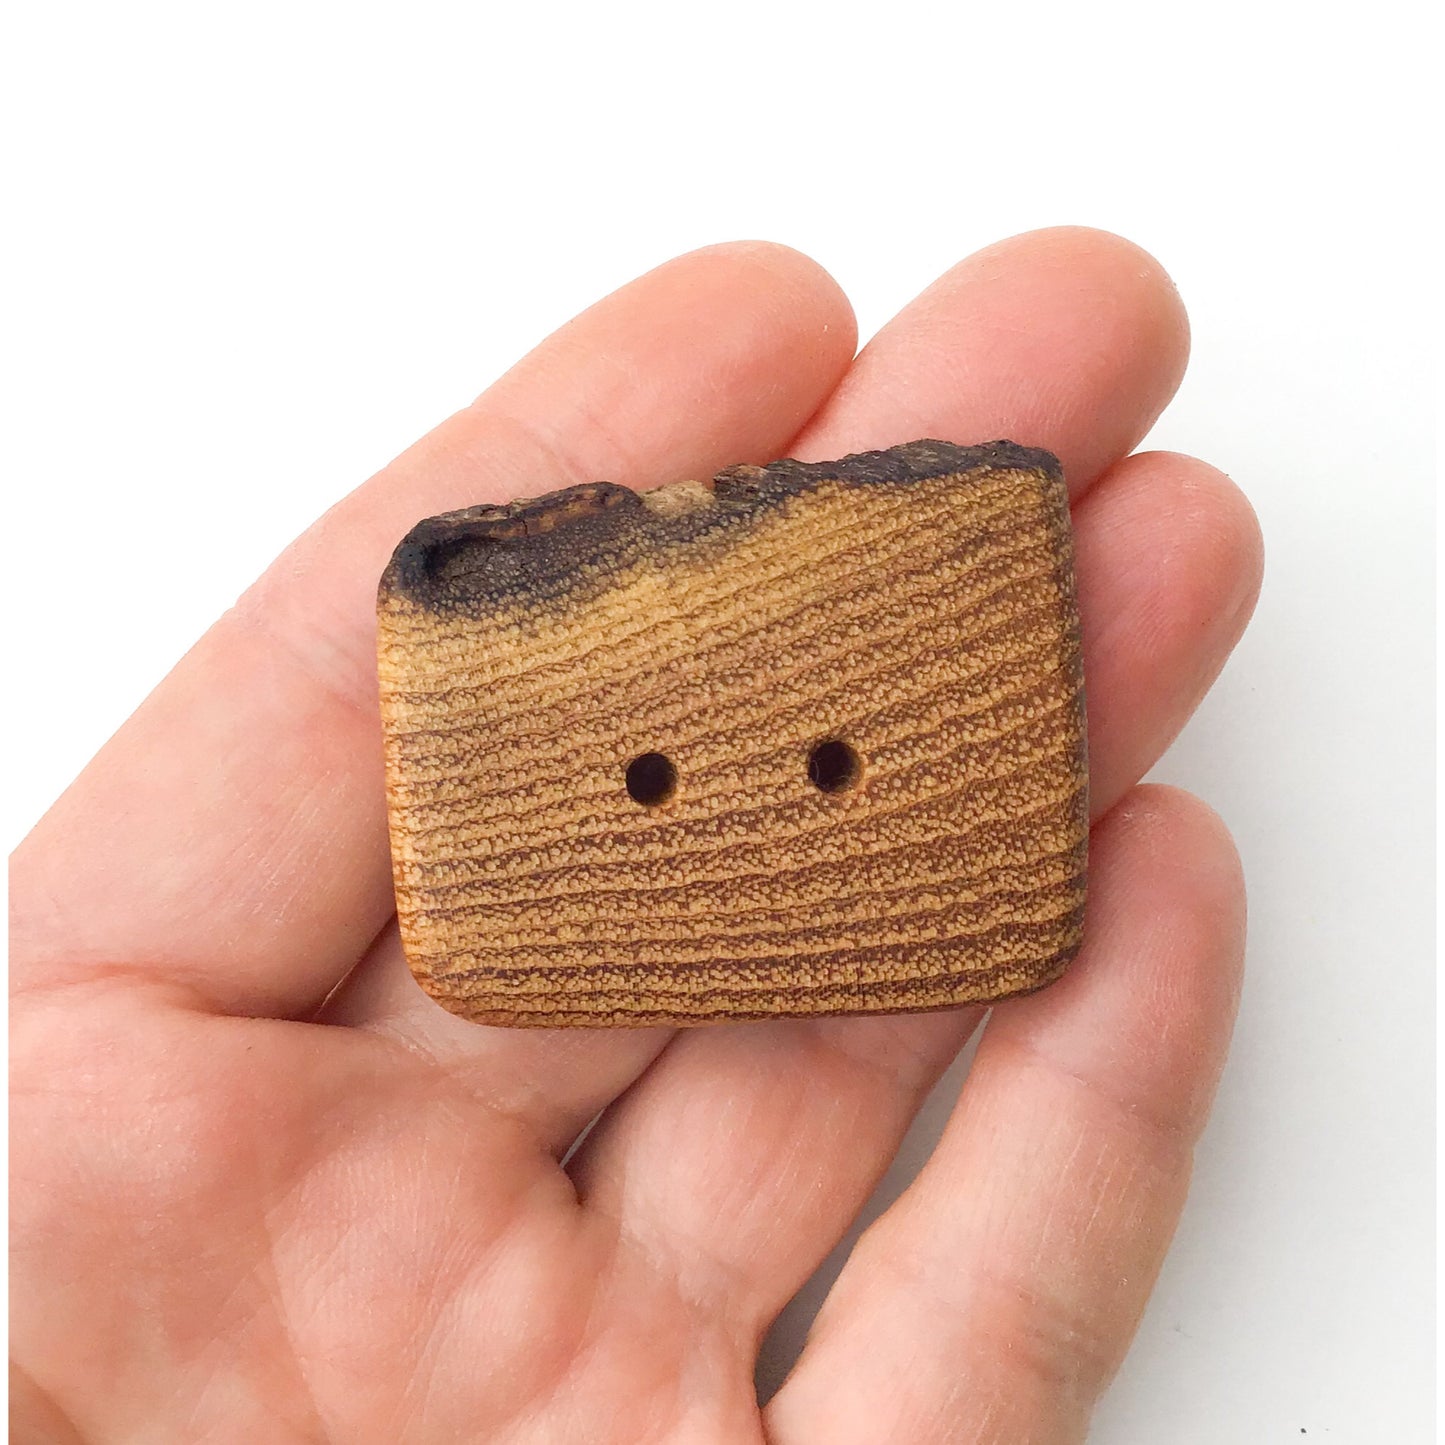 Live Edge Black Locust Wood Button - 1 5/8" x 1 1/4" Large Wooden Button